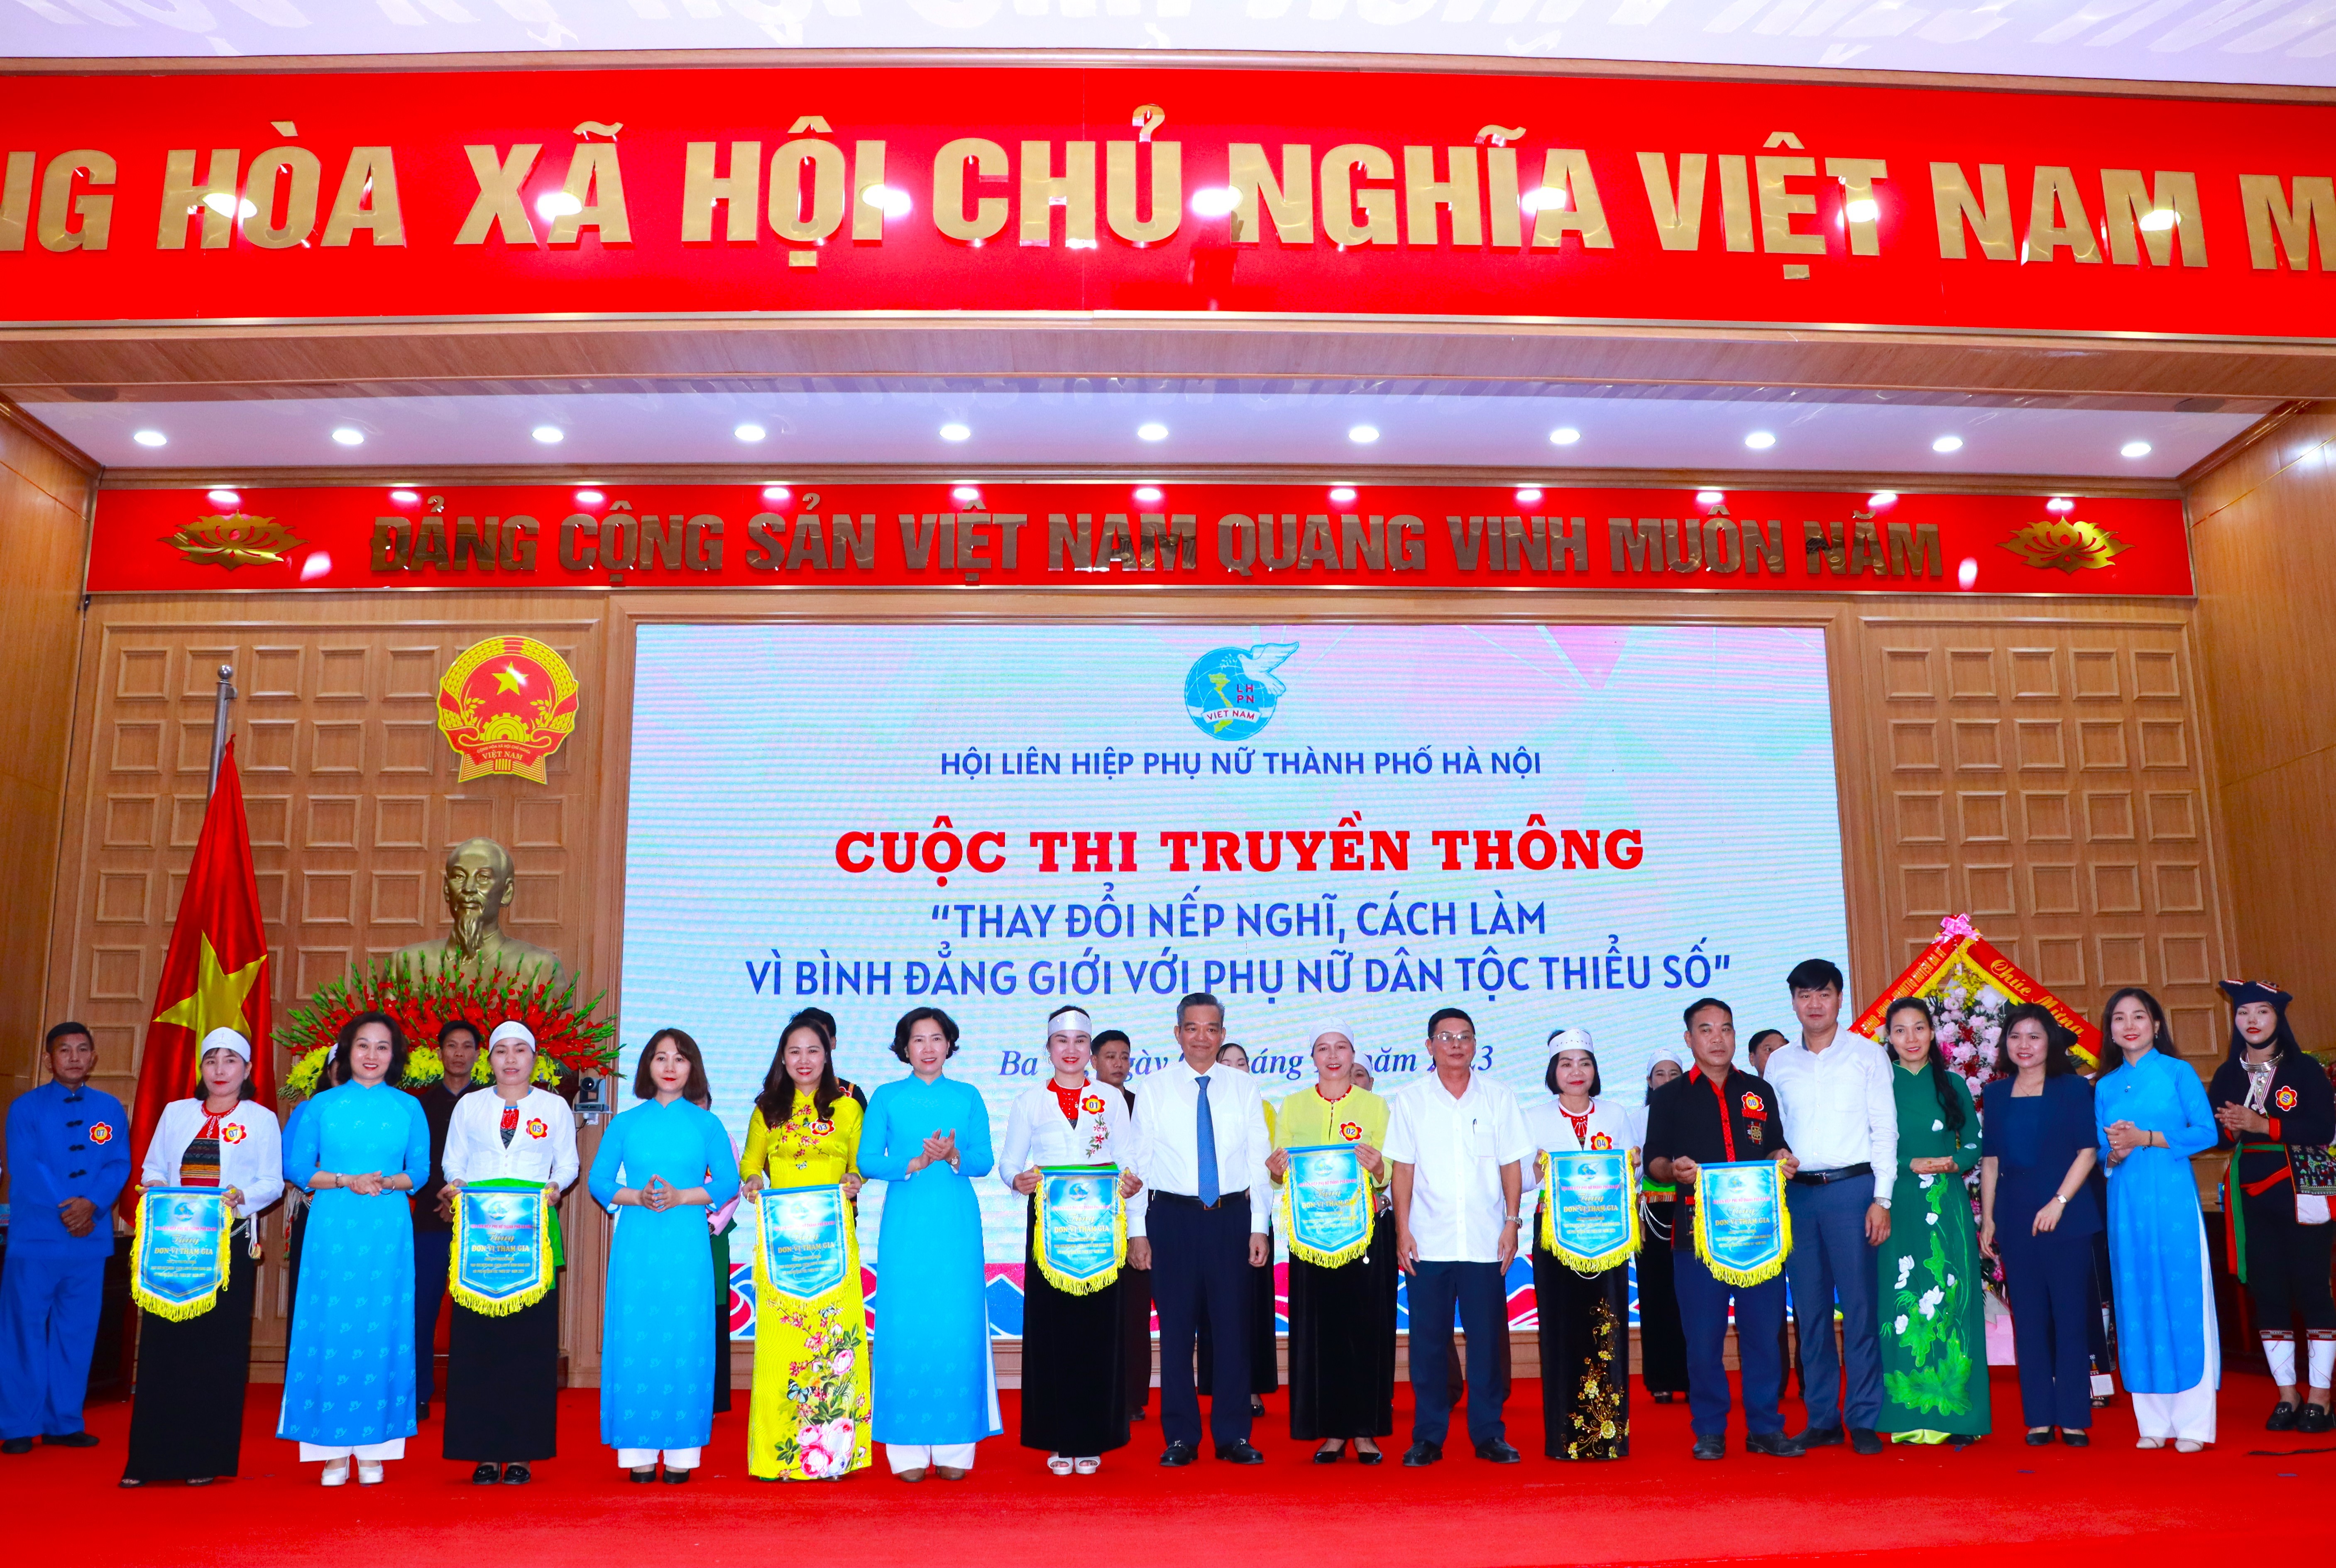 Hà Nội: Ngày hội bình đẳng giới với phụ nữ dân tộc thiểu số năm 2023